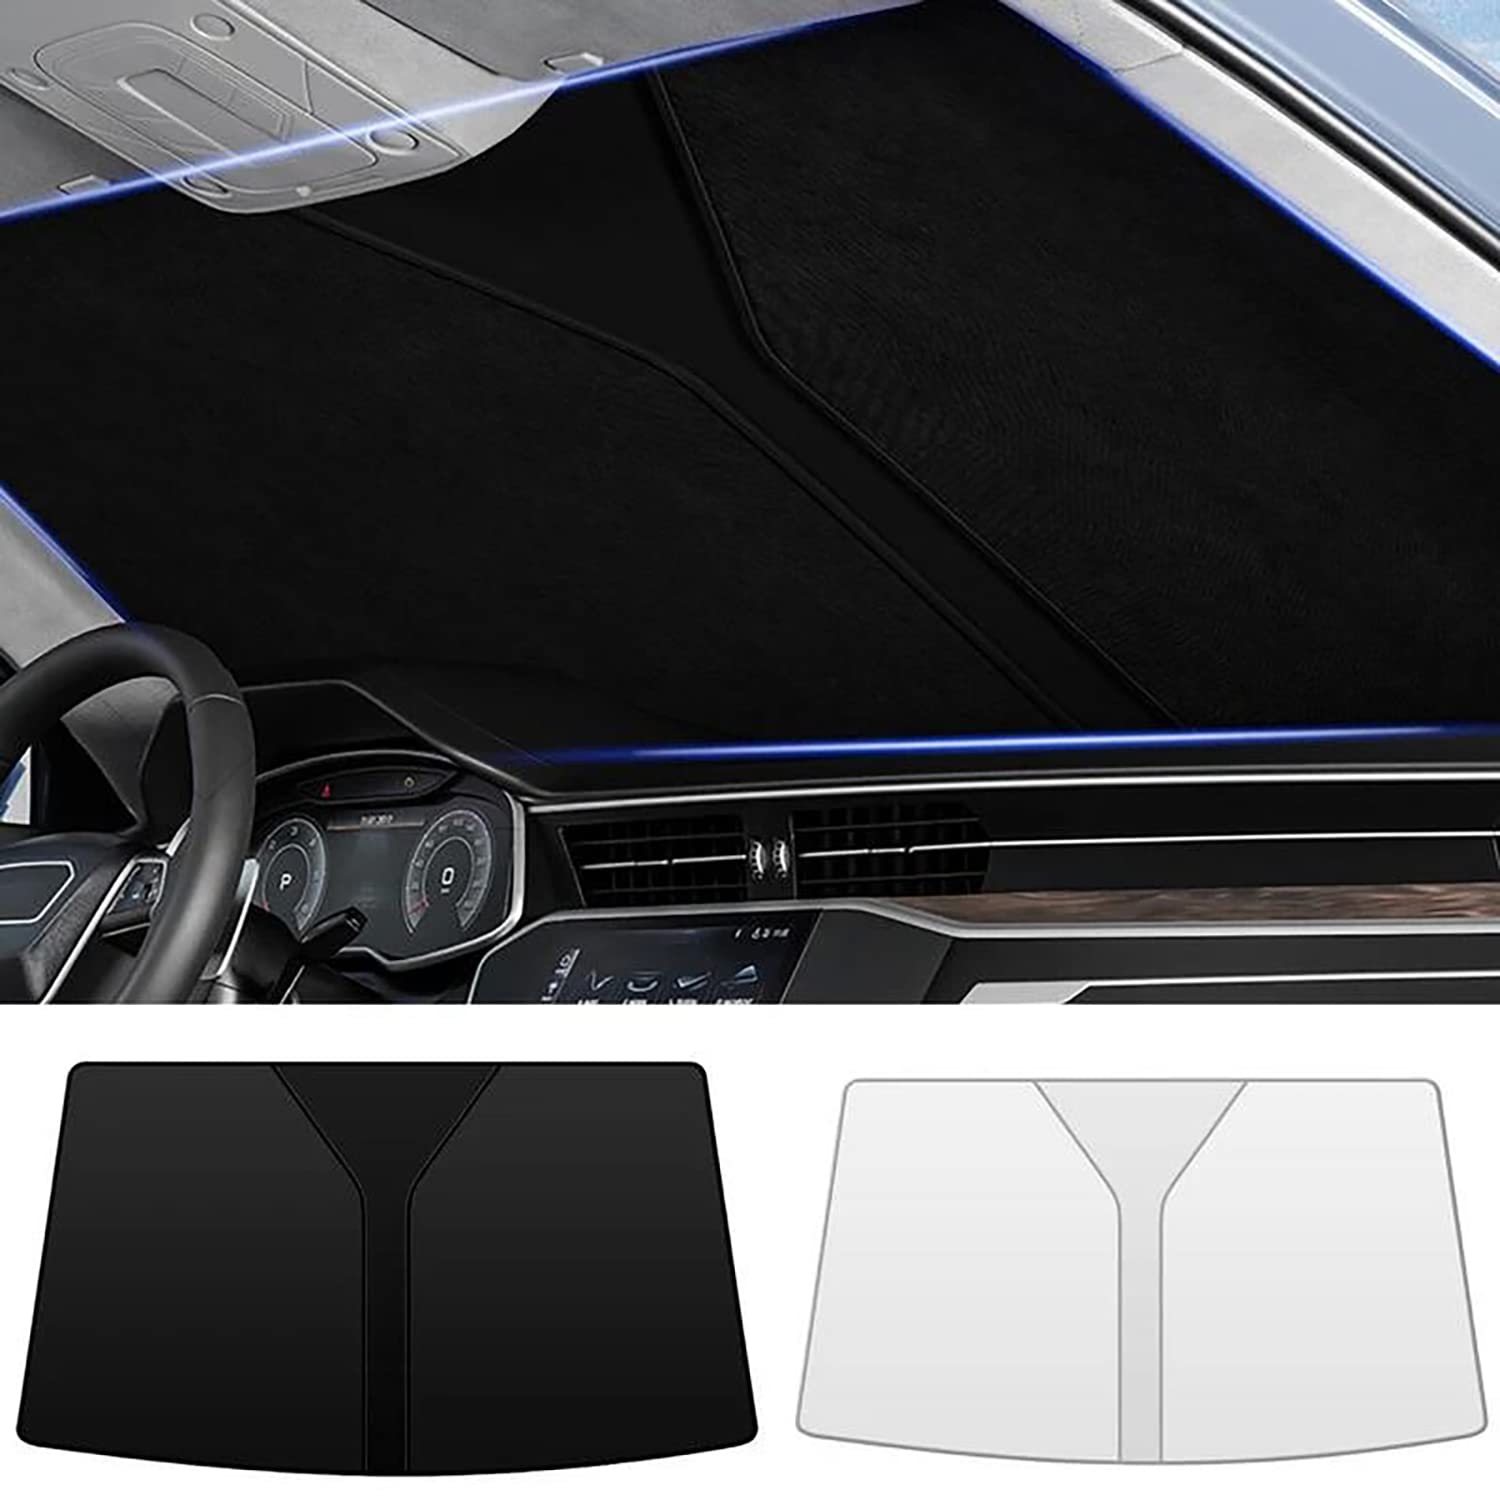 Frontscheiben Sonnenschutz Passend für Ford S-MAX Ⅱ MPV 2015 2016 2017 2018 2019 2020 2021 2022, Hitzeschutz Auto UV-Reflexion, Faltbares Design, Einfache Lagerung,- Silver von TANEND